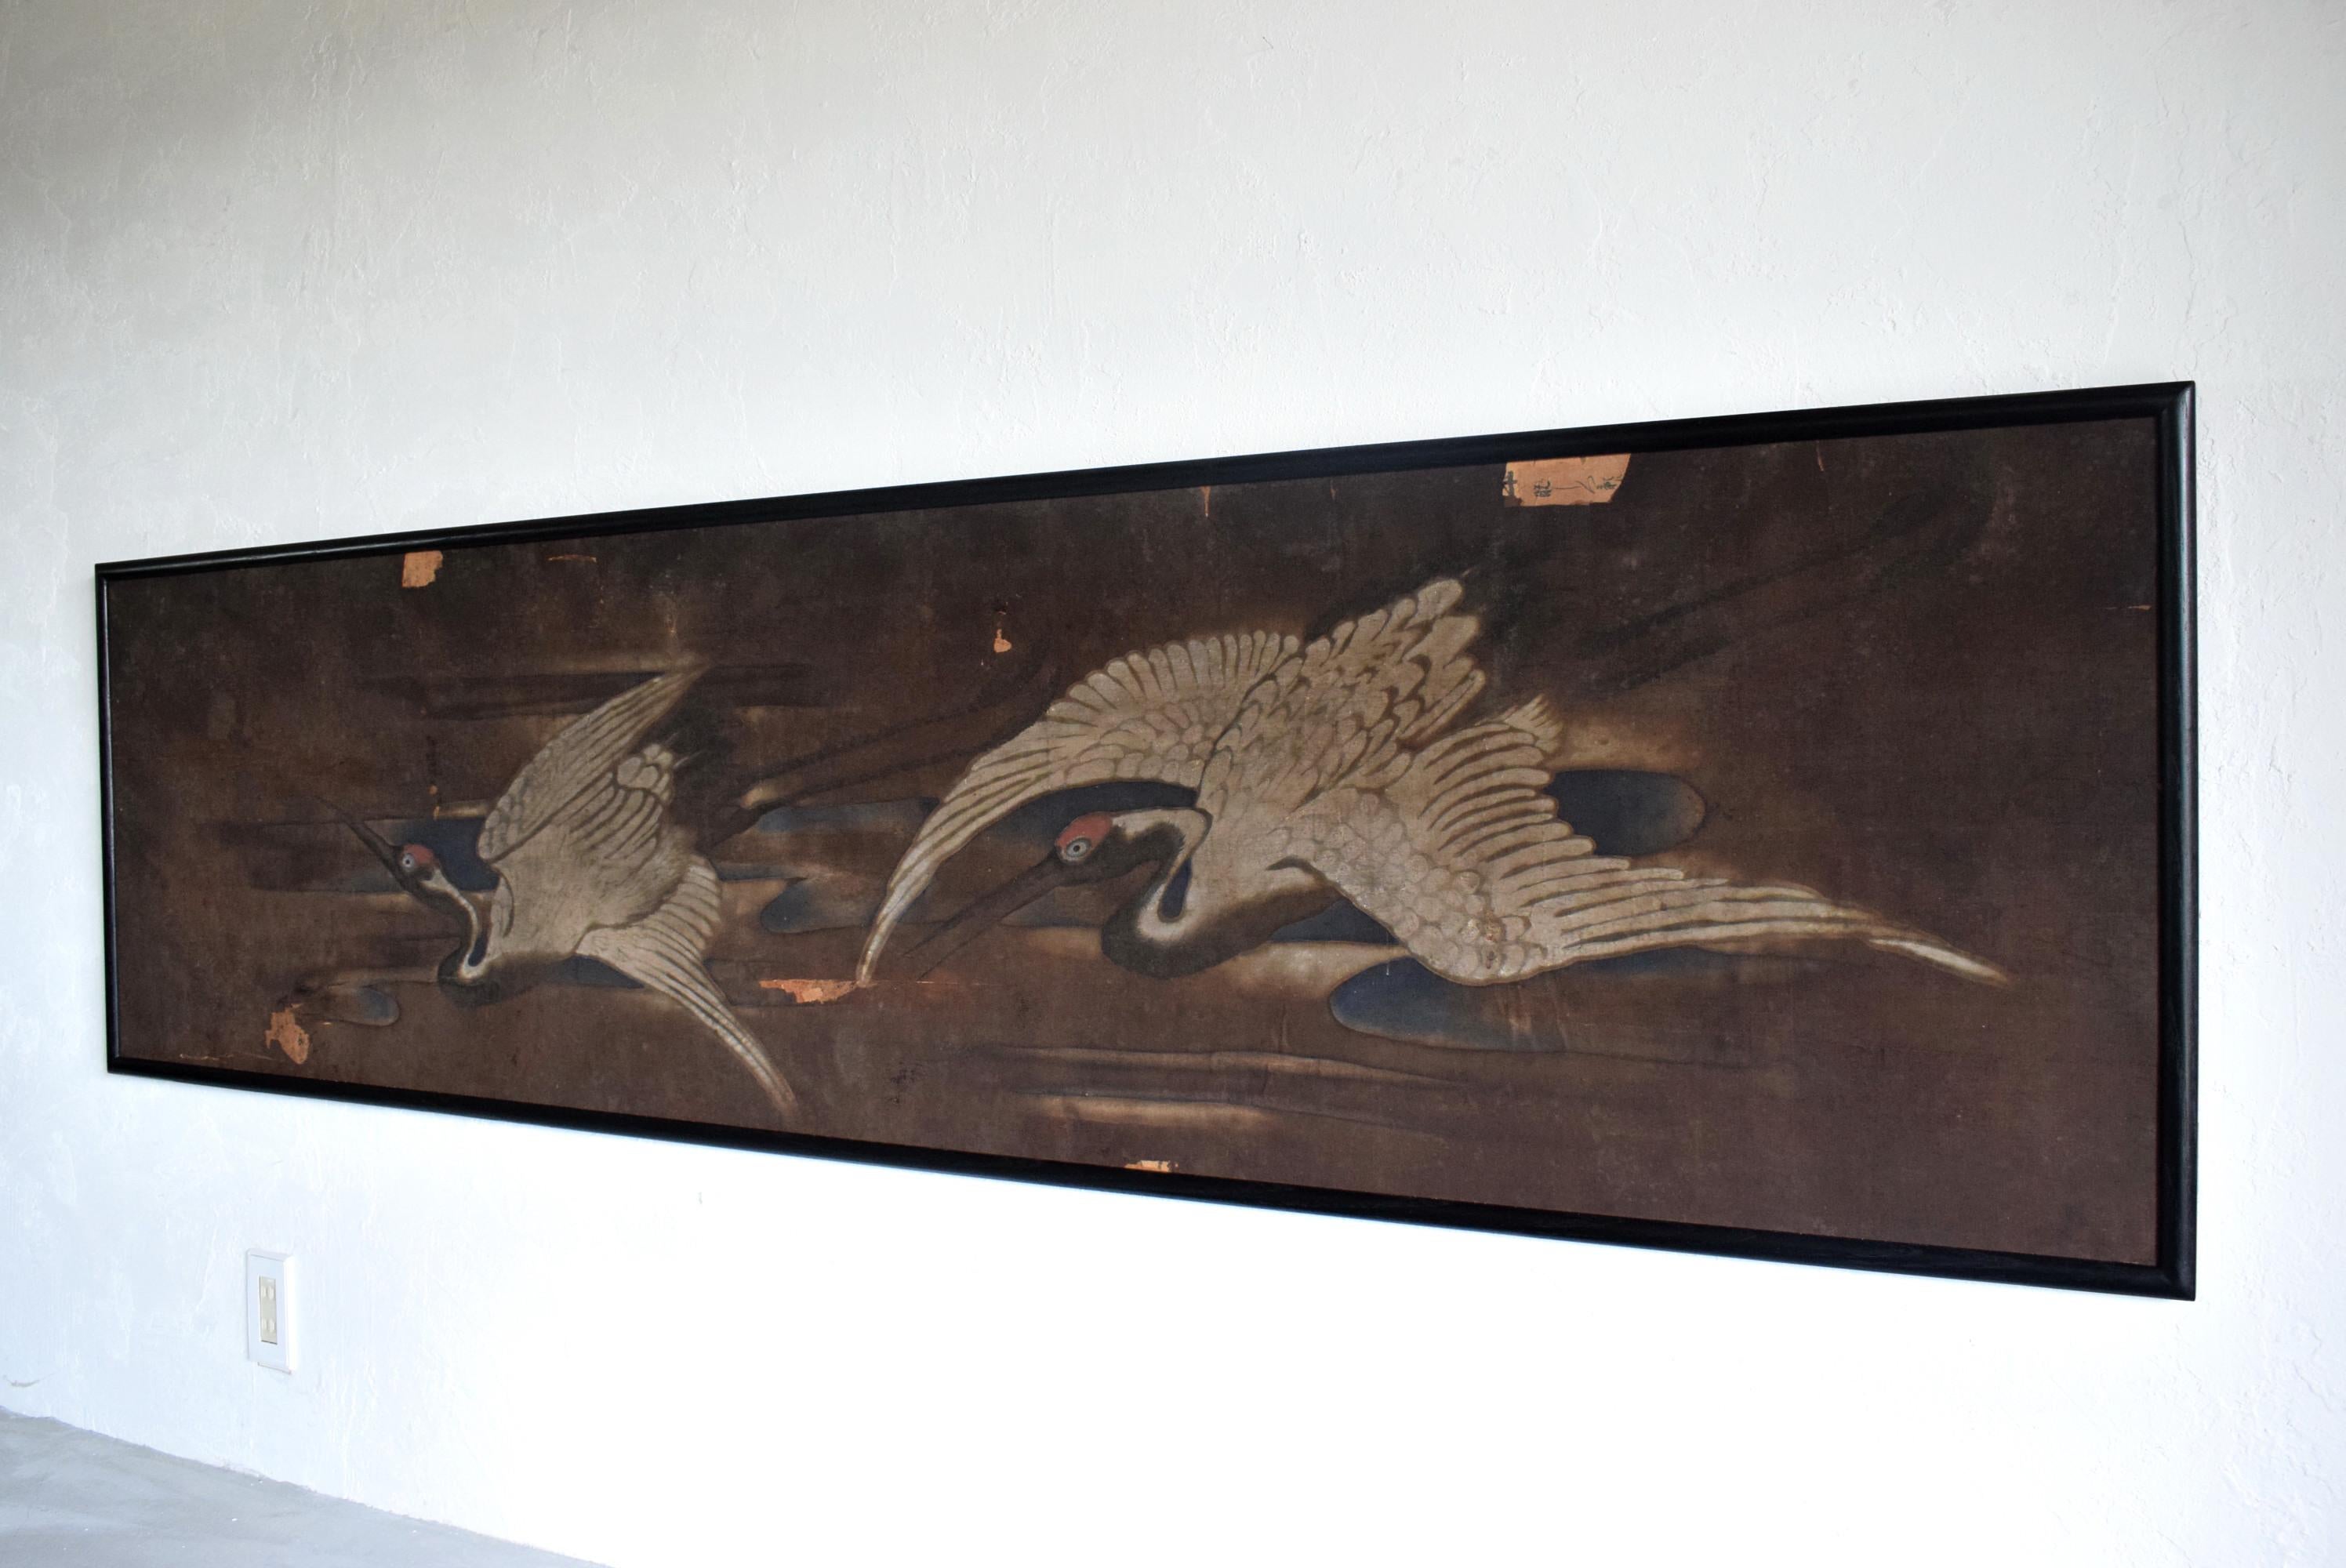 Es handelt sich um ein gerahmtes Bild von zwei Kranichen, die im Raum zwischen den Säulen der Meiji-Ära verwendet wurden.

Der Rahmen ist aus Kastanienholz gefertigt und die Farbe ist wie Lack.

B 203 T 3,5 H 50,5 (cm)
Das Gewicht beträgt etwa